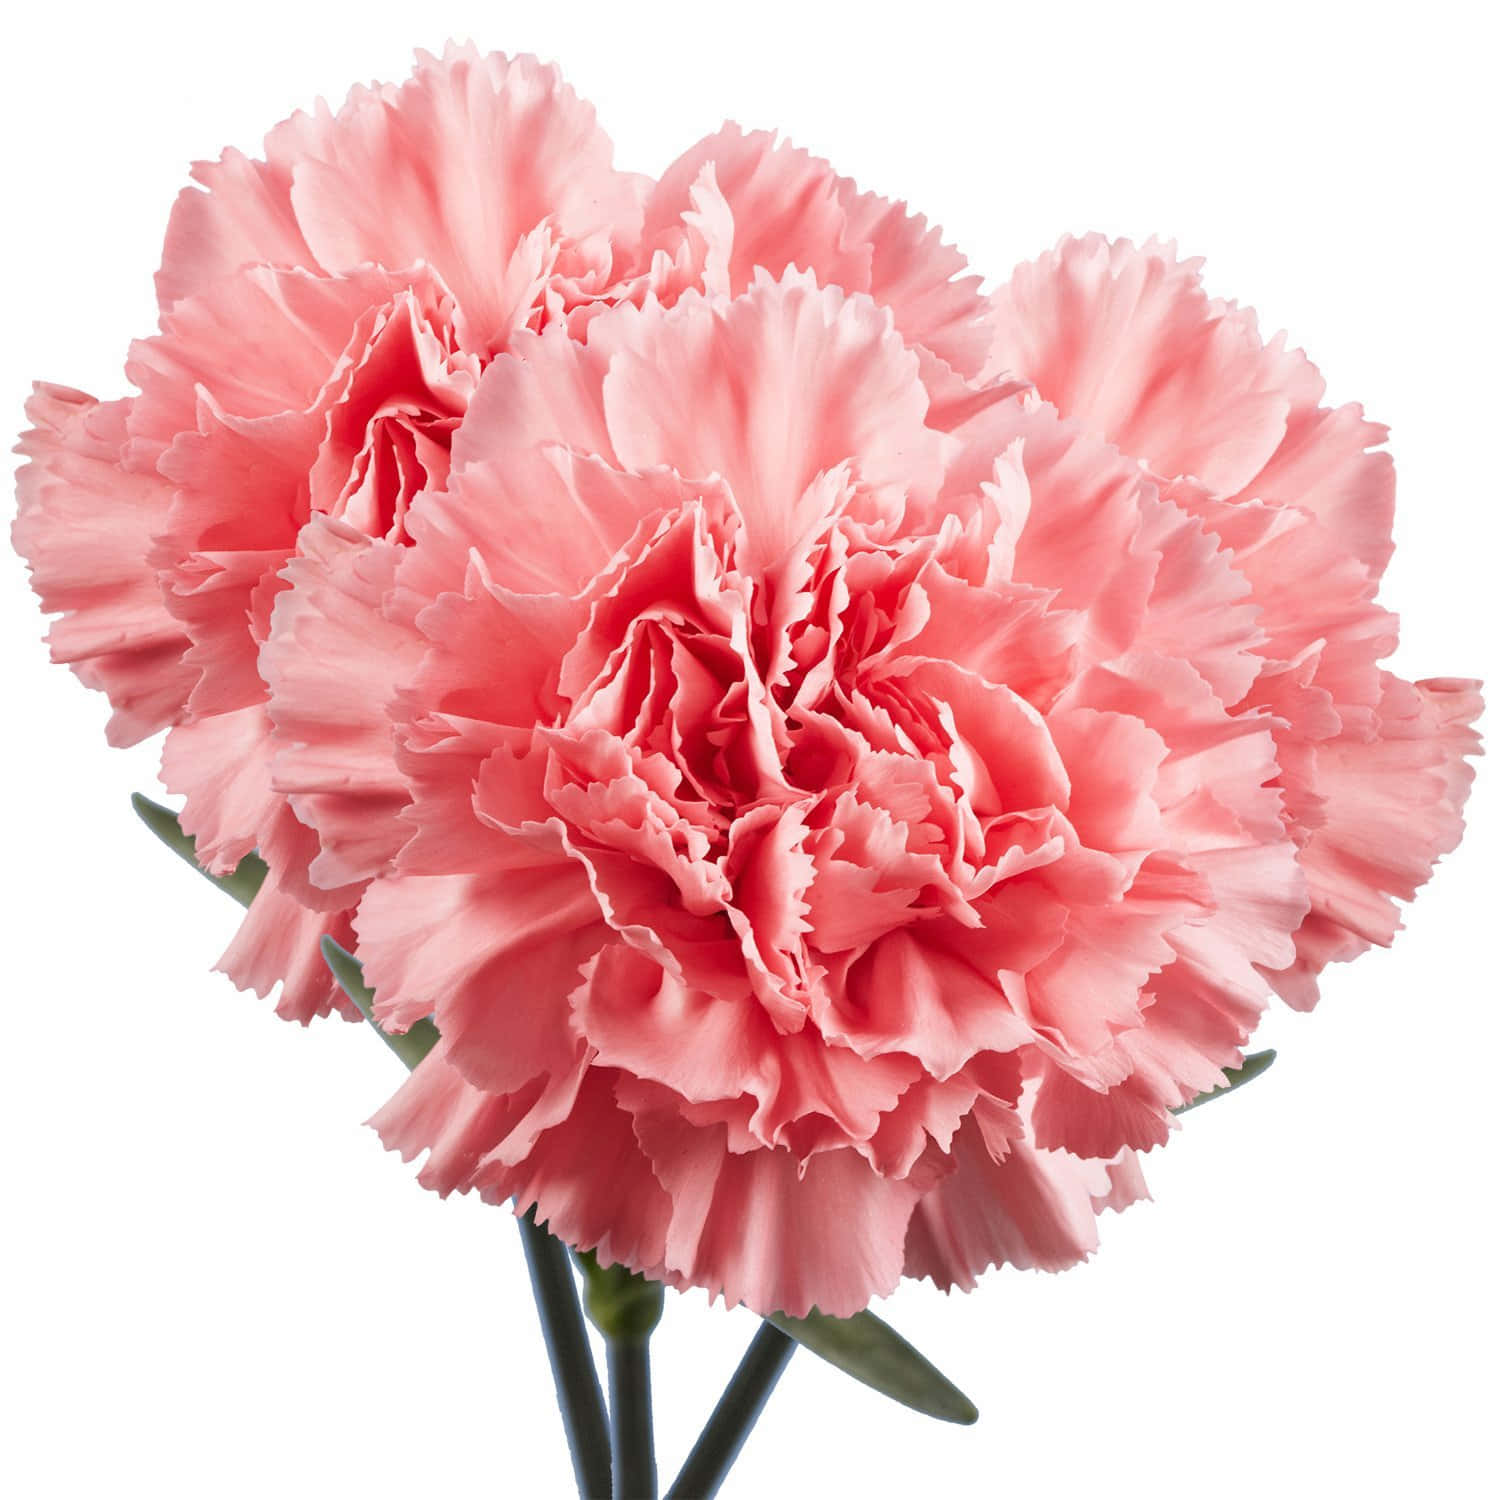 Rosanelken Sind Der Perfekte Florale Weg, Um Liebe, Dankbarkeit Und Bewunderung Auszudrücken.